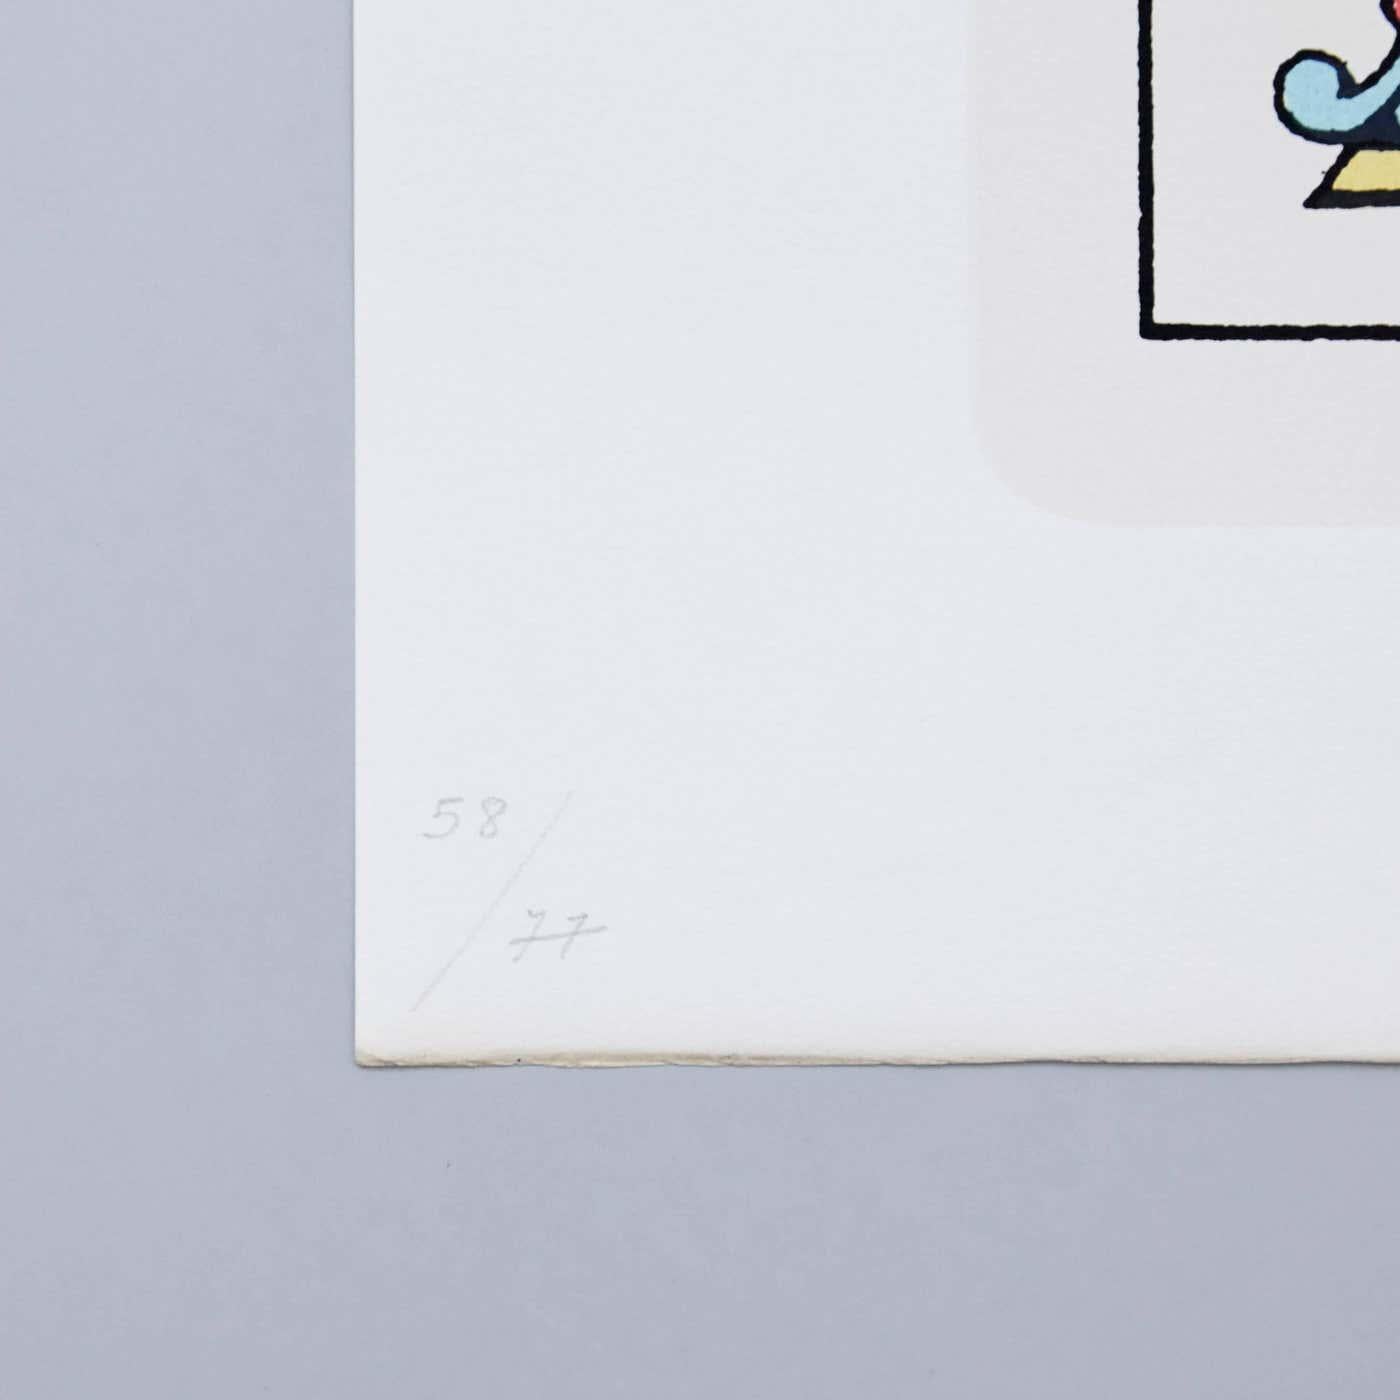 Visuelles Gedicht von Joan Brossa, ca. 1989.

Grafischer Druck. Lithographie auf Guarro-Papier. Limitierte Auflage (77). Signiert und nummeriert. Jahr: 1989

Maße: Breite 38 cm (15 Zoll)
Höhe 50 cm (20 in)

Joan Brossa - Barcelona, Spanien,